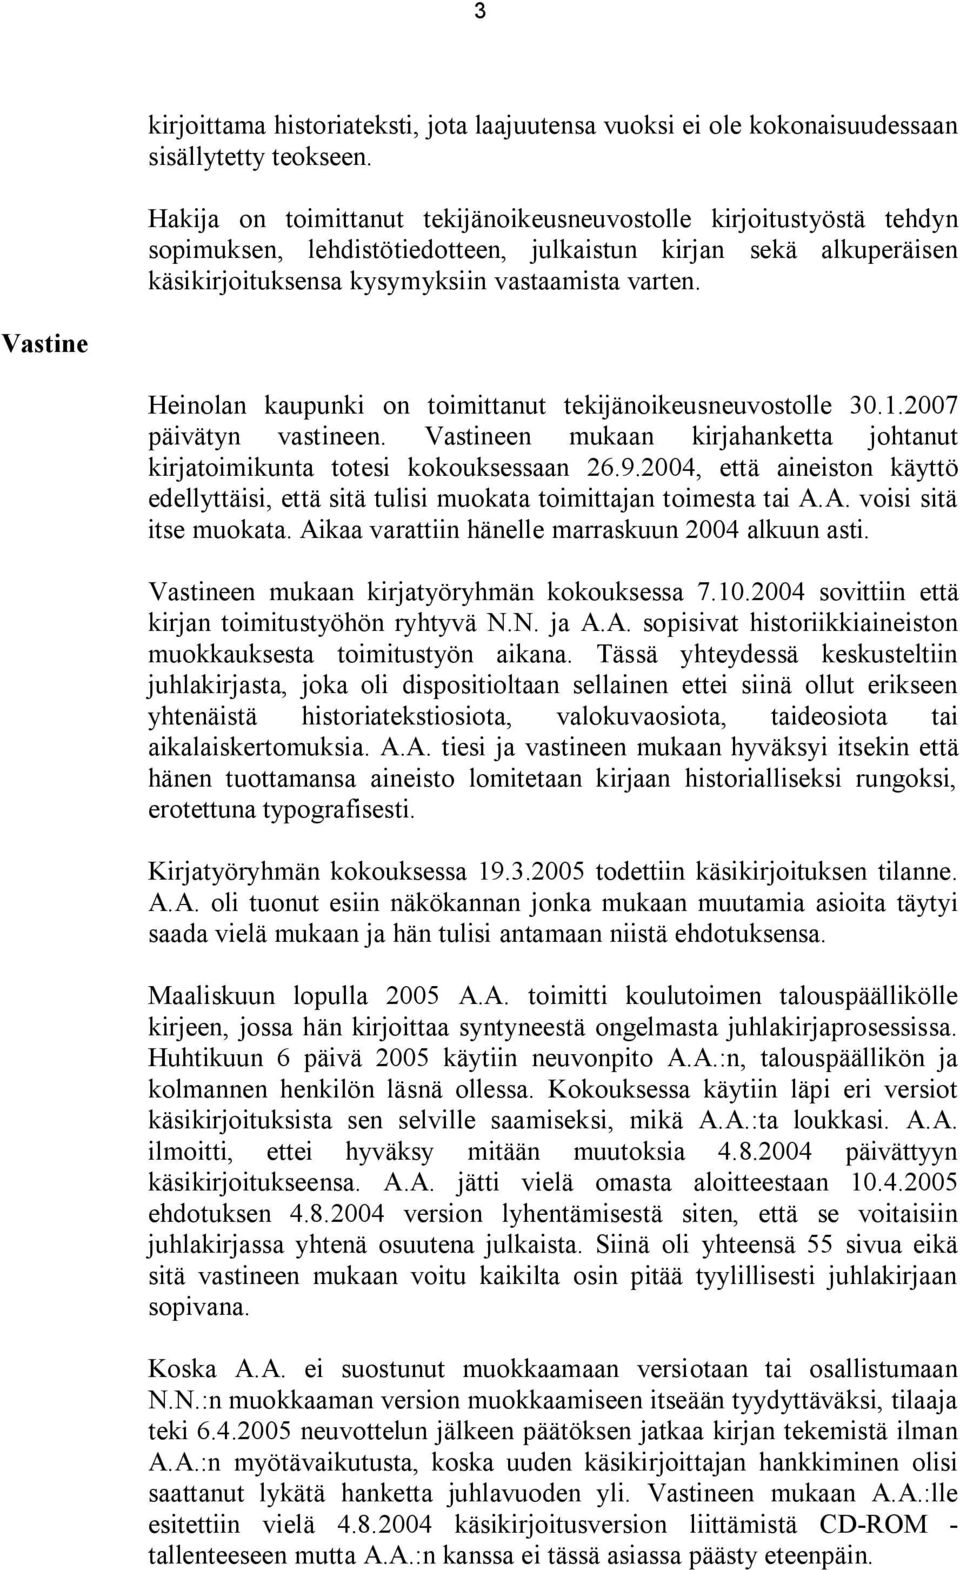 Vastine Heinolan kaupunki on toimittanut tekijänoikeusneuvostolle 30.1.2007 päivätyn vastineen. Vastineen mukaan kirjahanketta johtanut kirjatoimikunta totesi kokouksessaan 26.9.